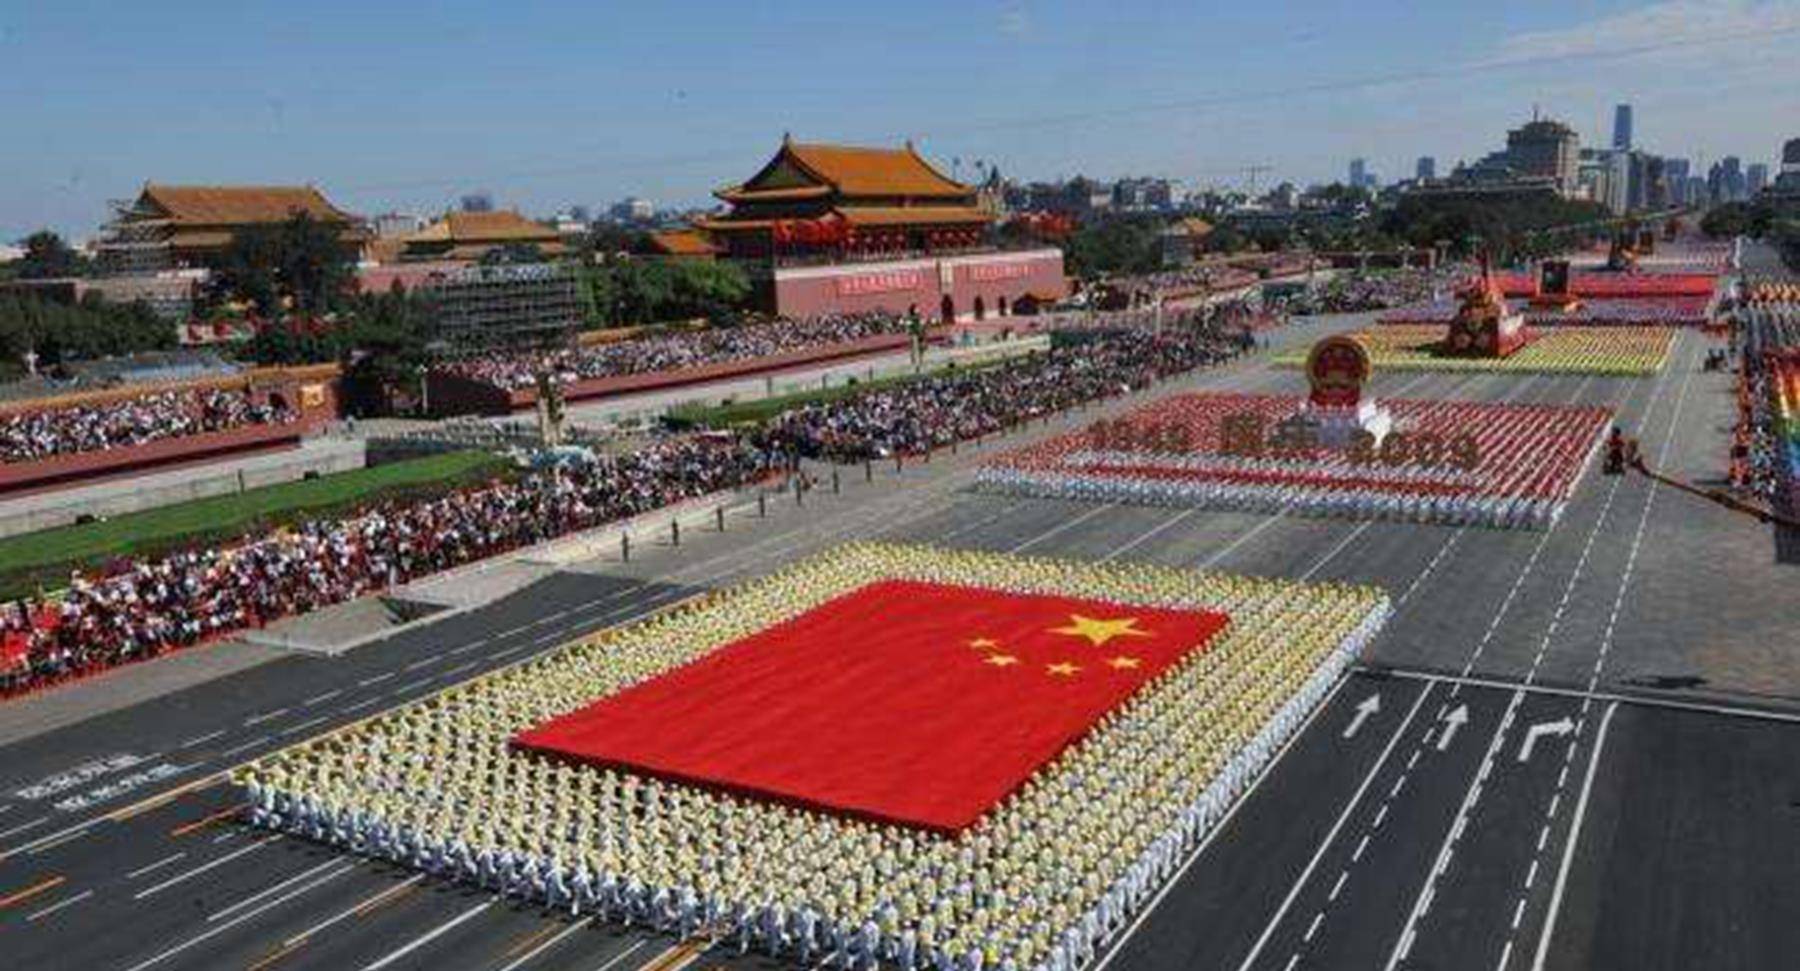 2019年的中国大阅兵,将展现史无前例的最强悍阵容